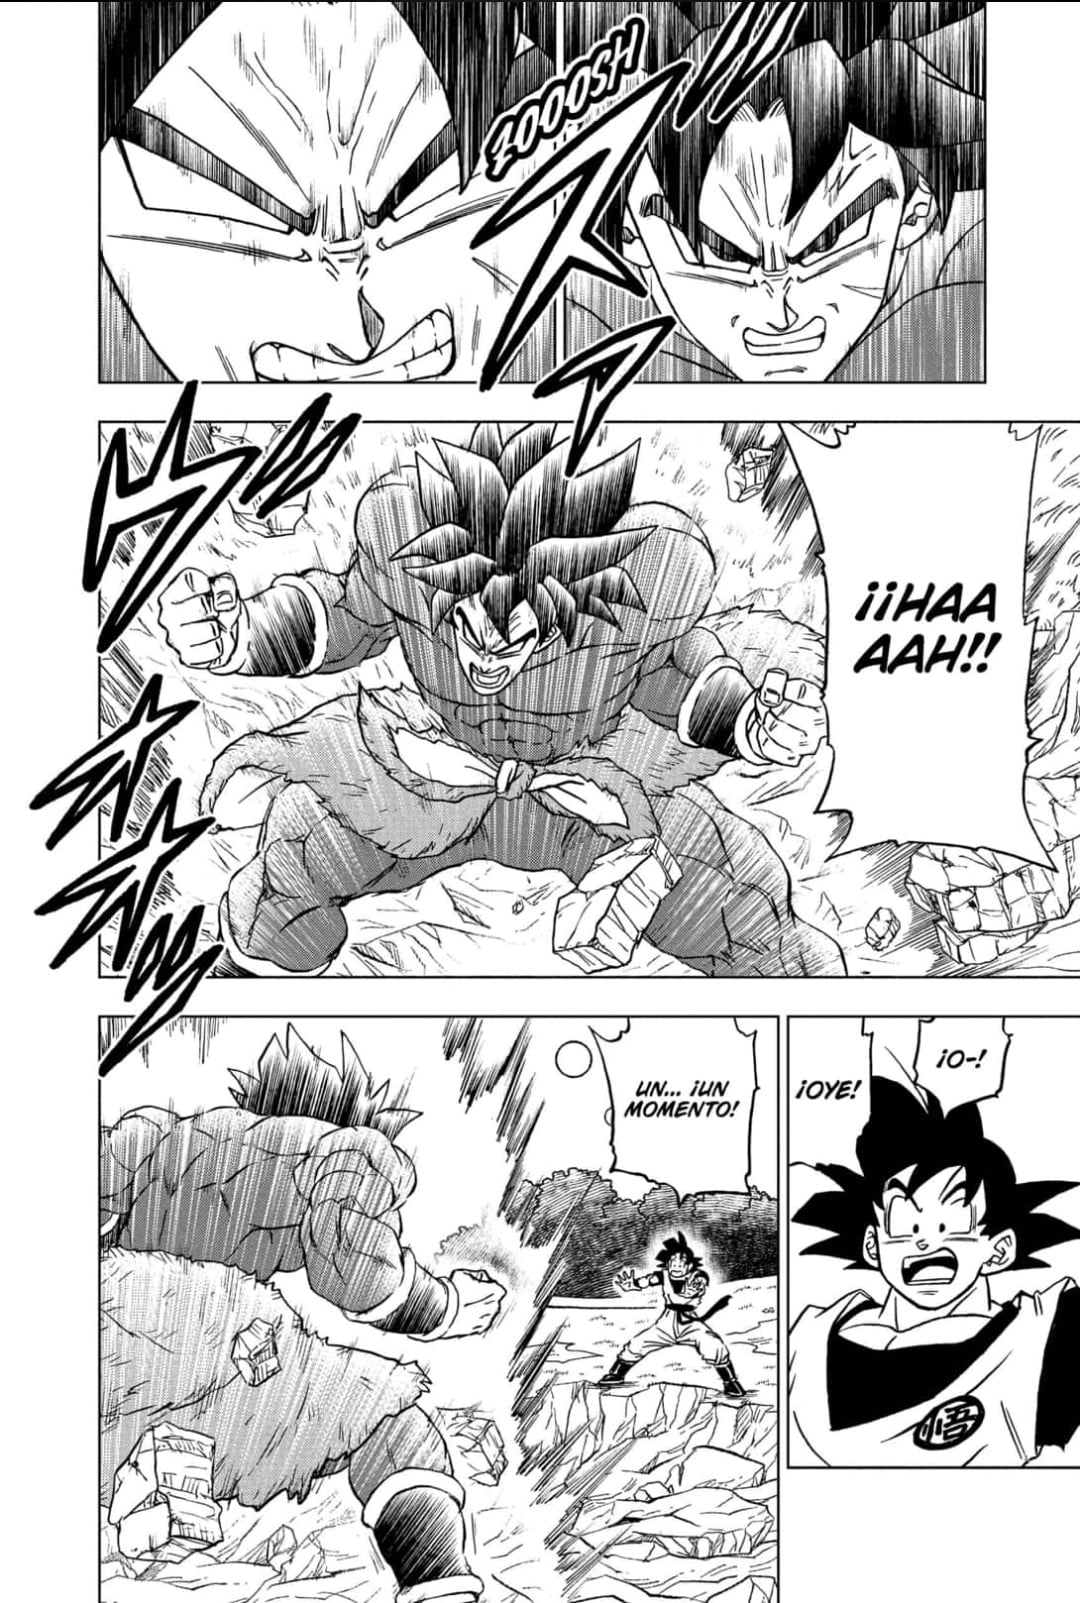 Estas son las primeras imágenes del capítulo 93 del manga de Dragon Ball  Super - Nintenderos